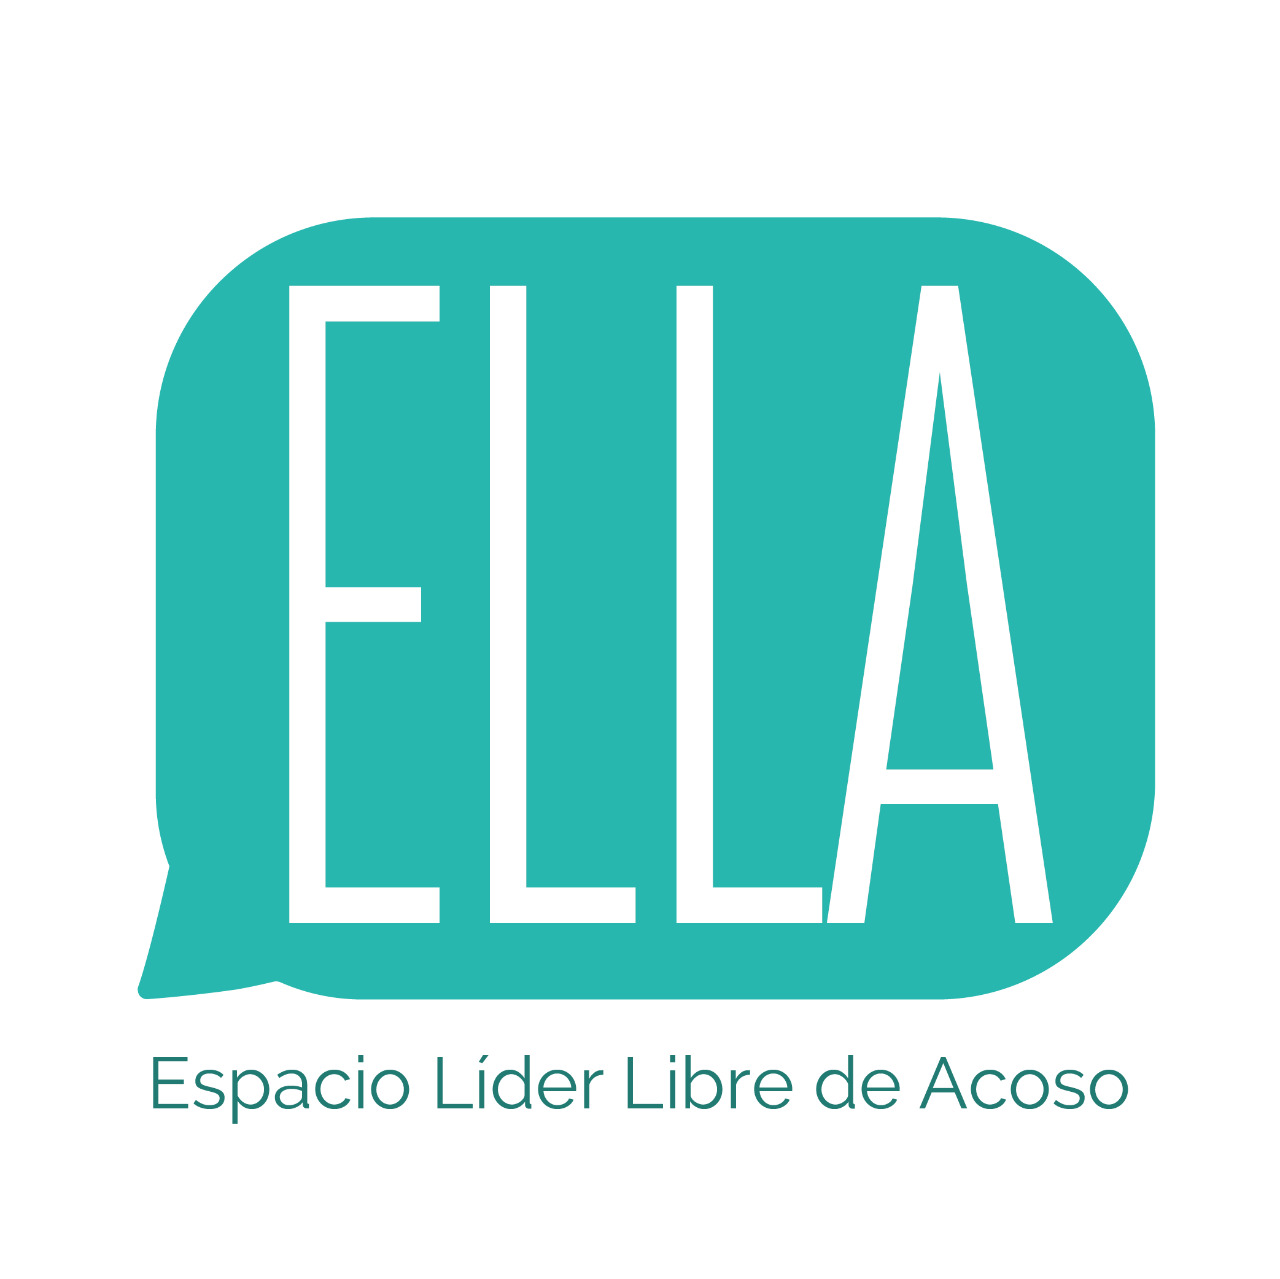 Logo Espacio L°der Libre de Acoso - Festival Internacional Puro Cuento 2019.jpeg